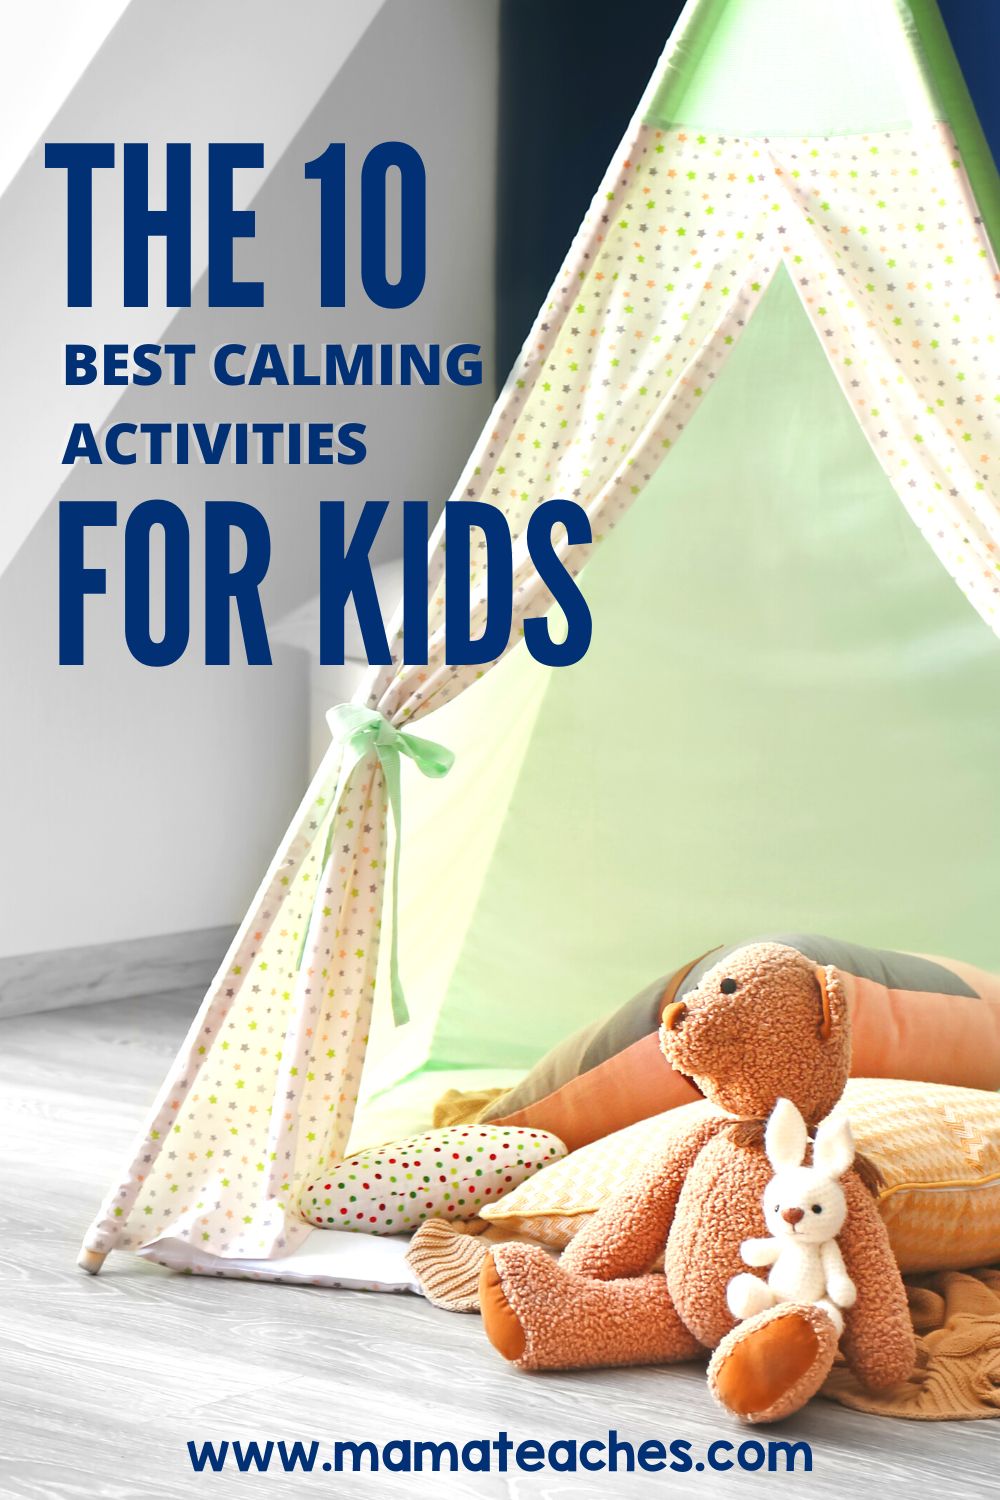 The 10 Best Calming Activities for Kids